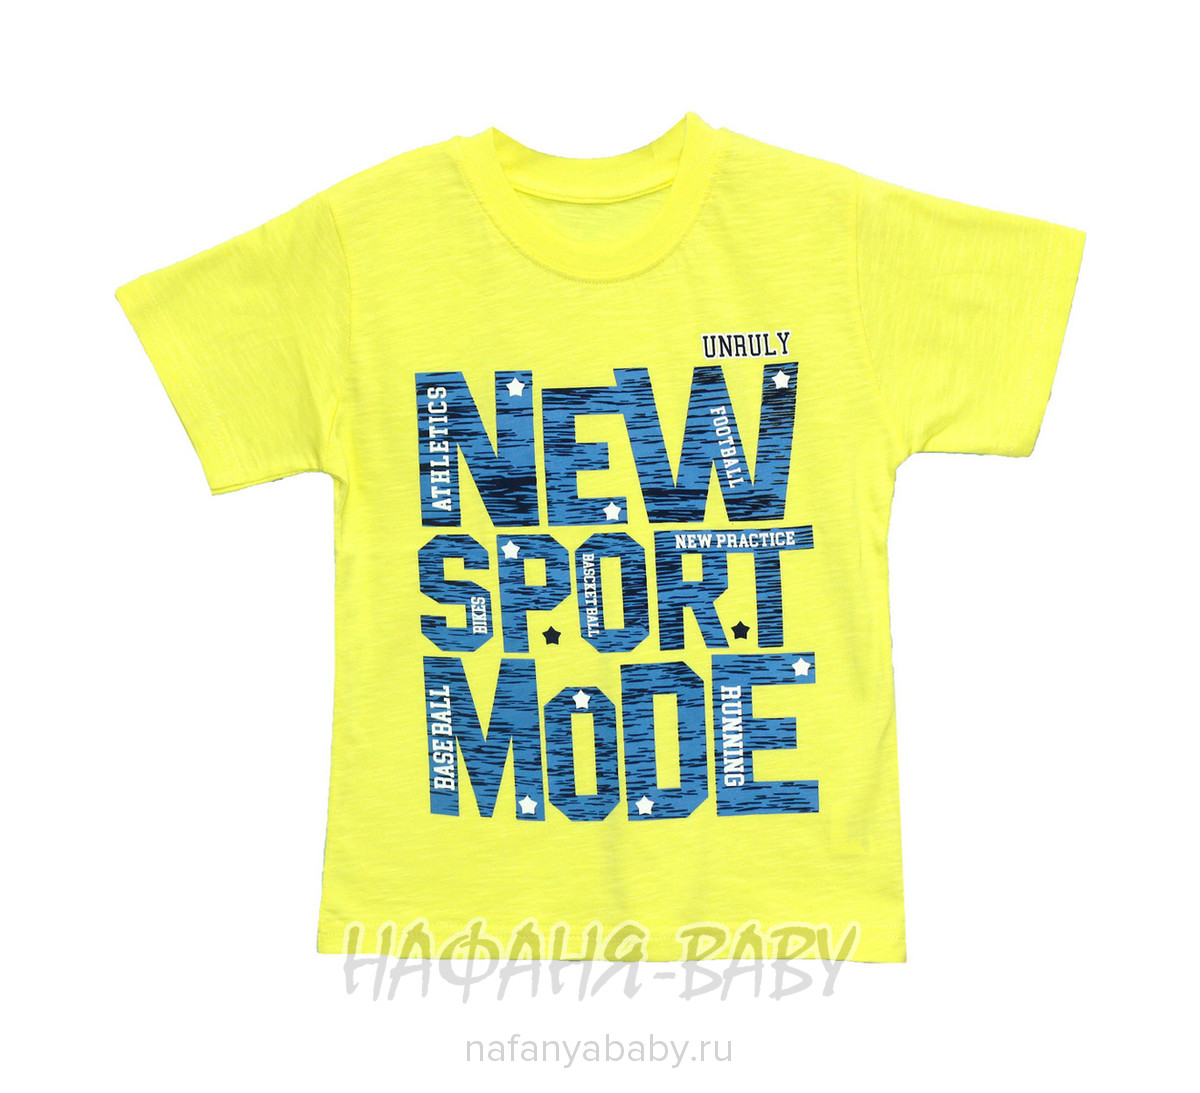 Детская футболка UNRULY, купить в интернет магазине Нафаня. арт: 2942.